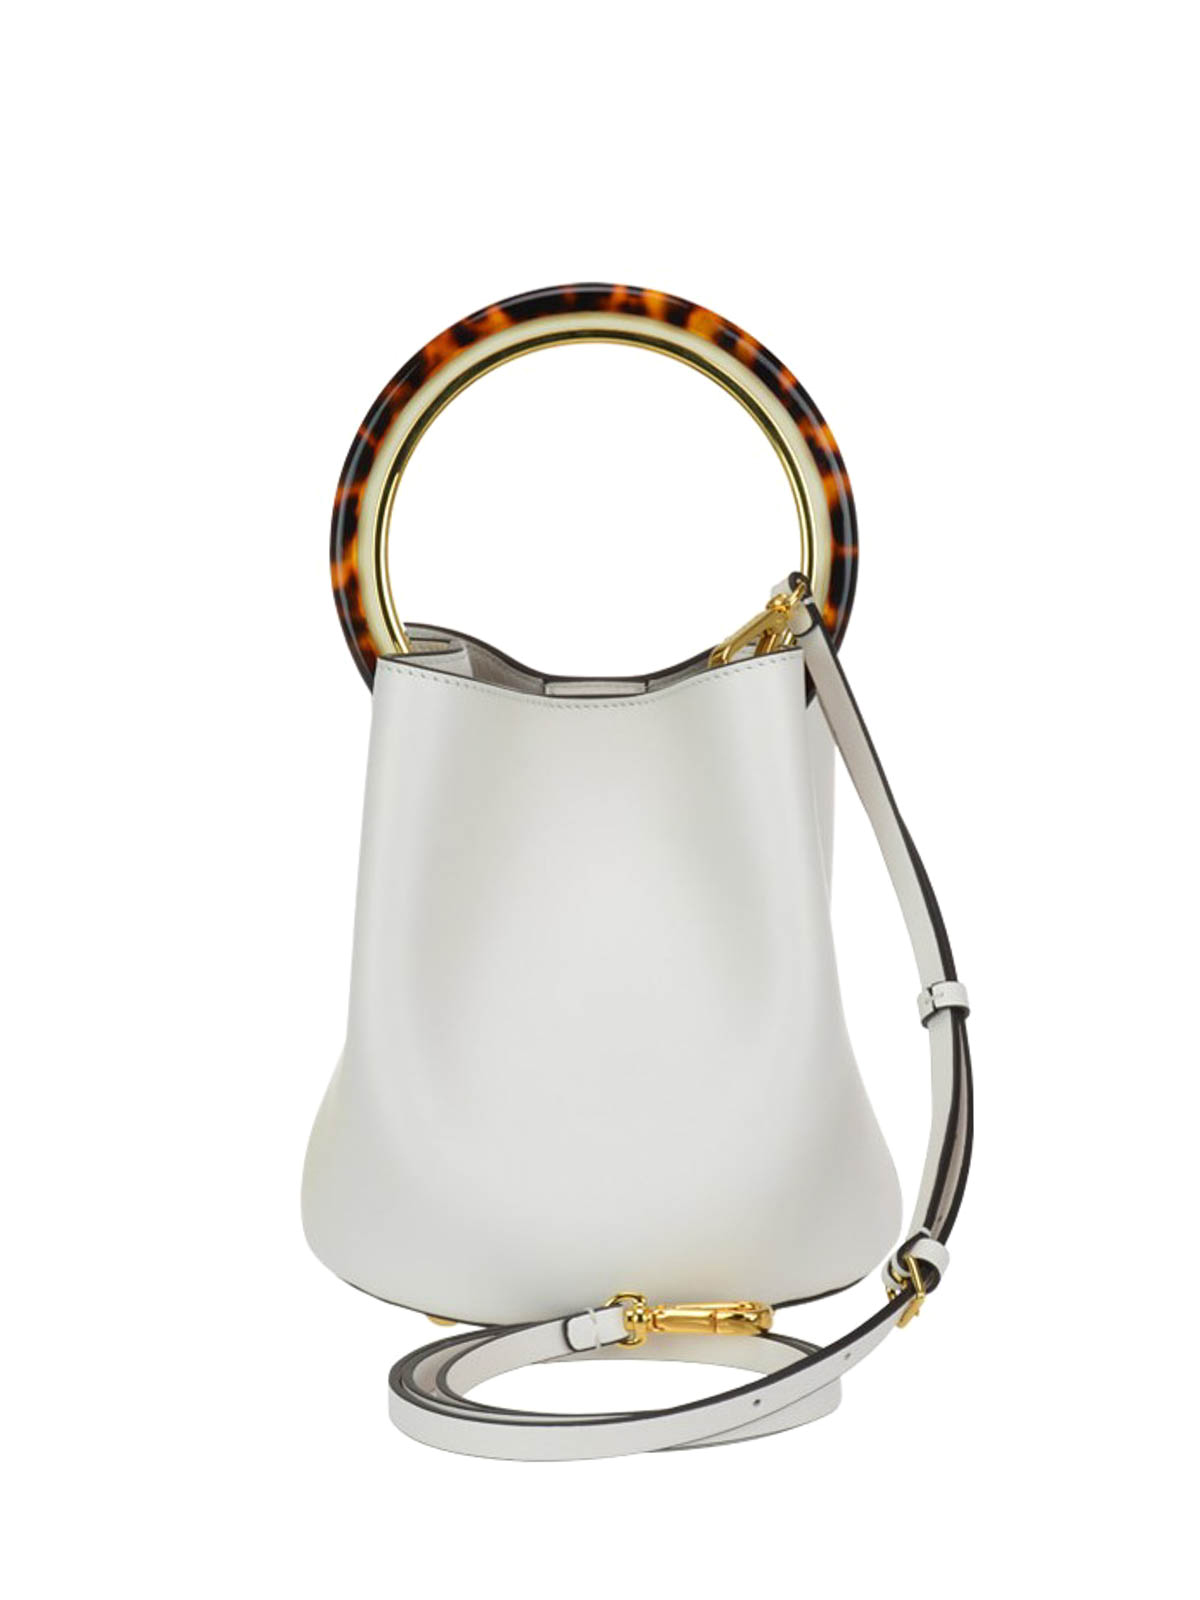 Marni - White bucket bag with tortoiseshell handle - Bucket bags ...